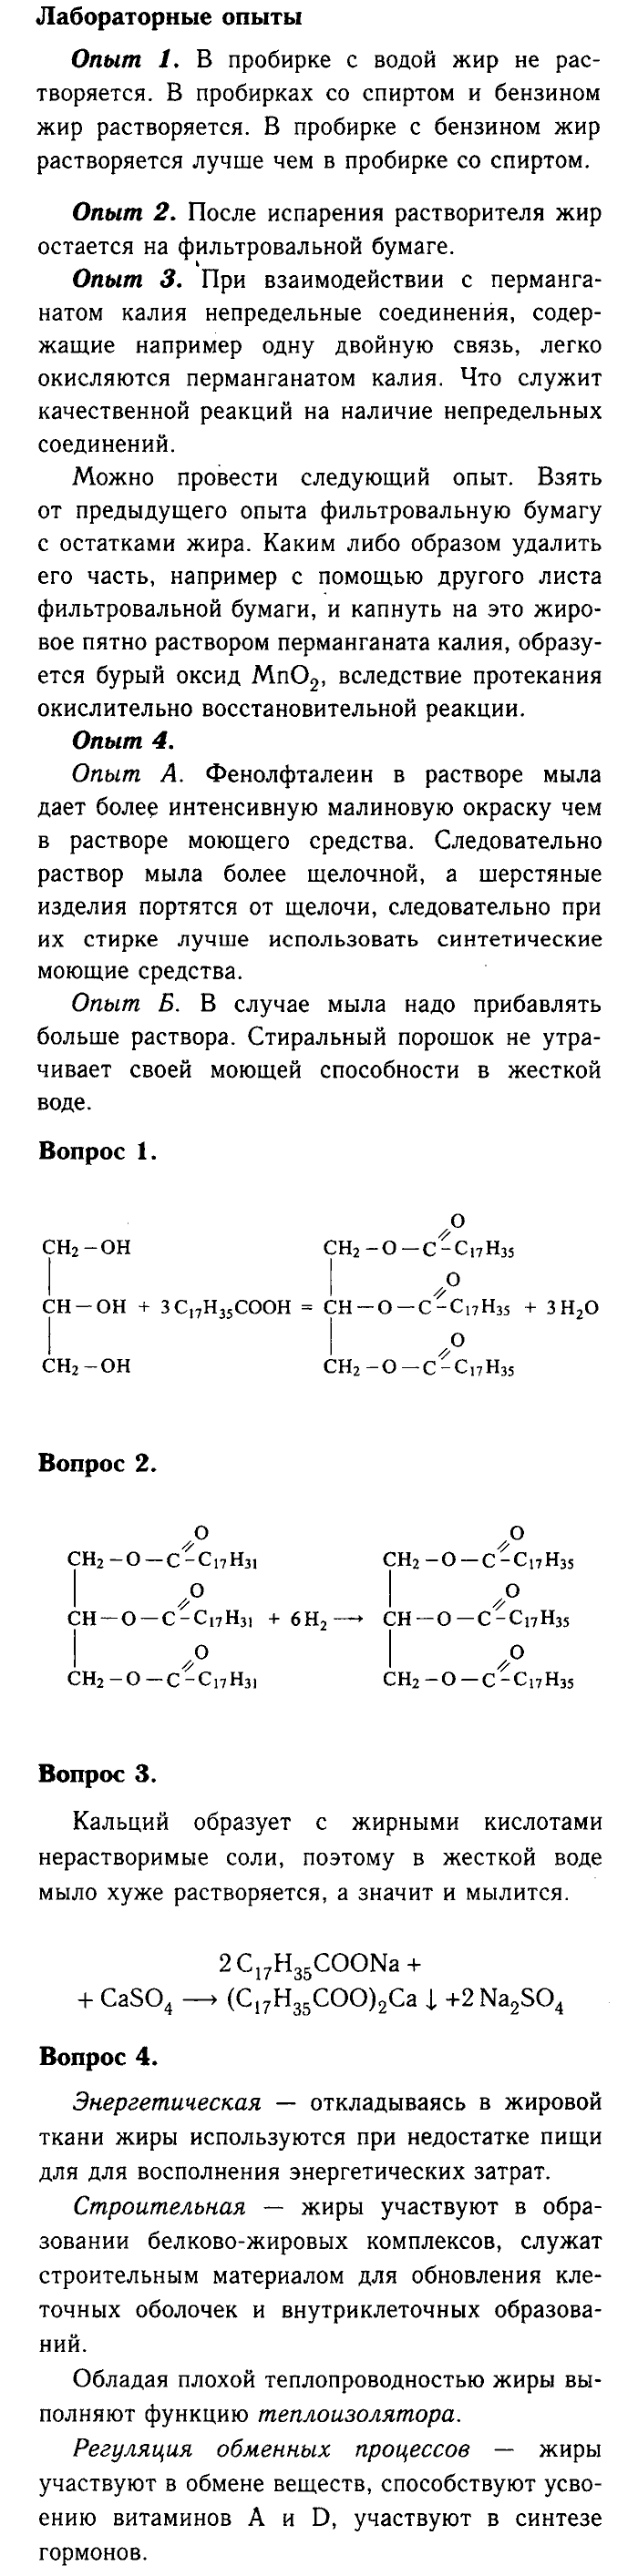 Химия, 9 класс, Габриелян, Лысова, 2002-2012, Параграф 37  (Глава пятая. Органическая химия. §37. Жиры) Задача: § 37